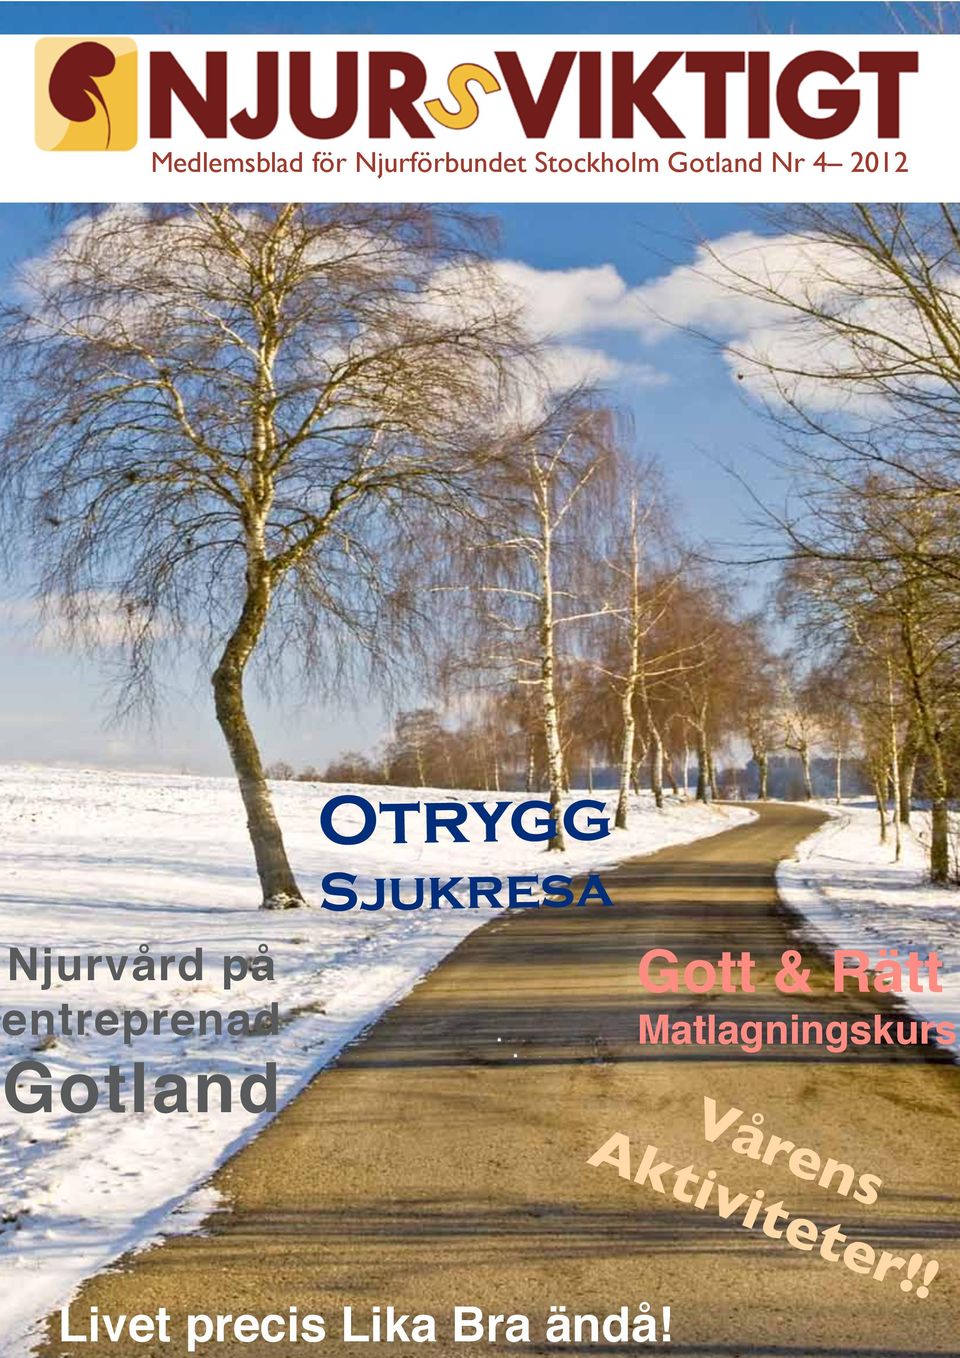 Gotland Otrygg Sjukresa Gott & Rätt